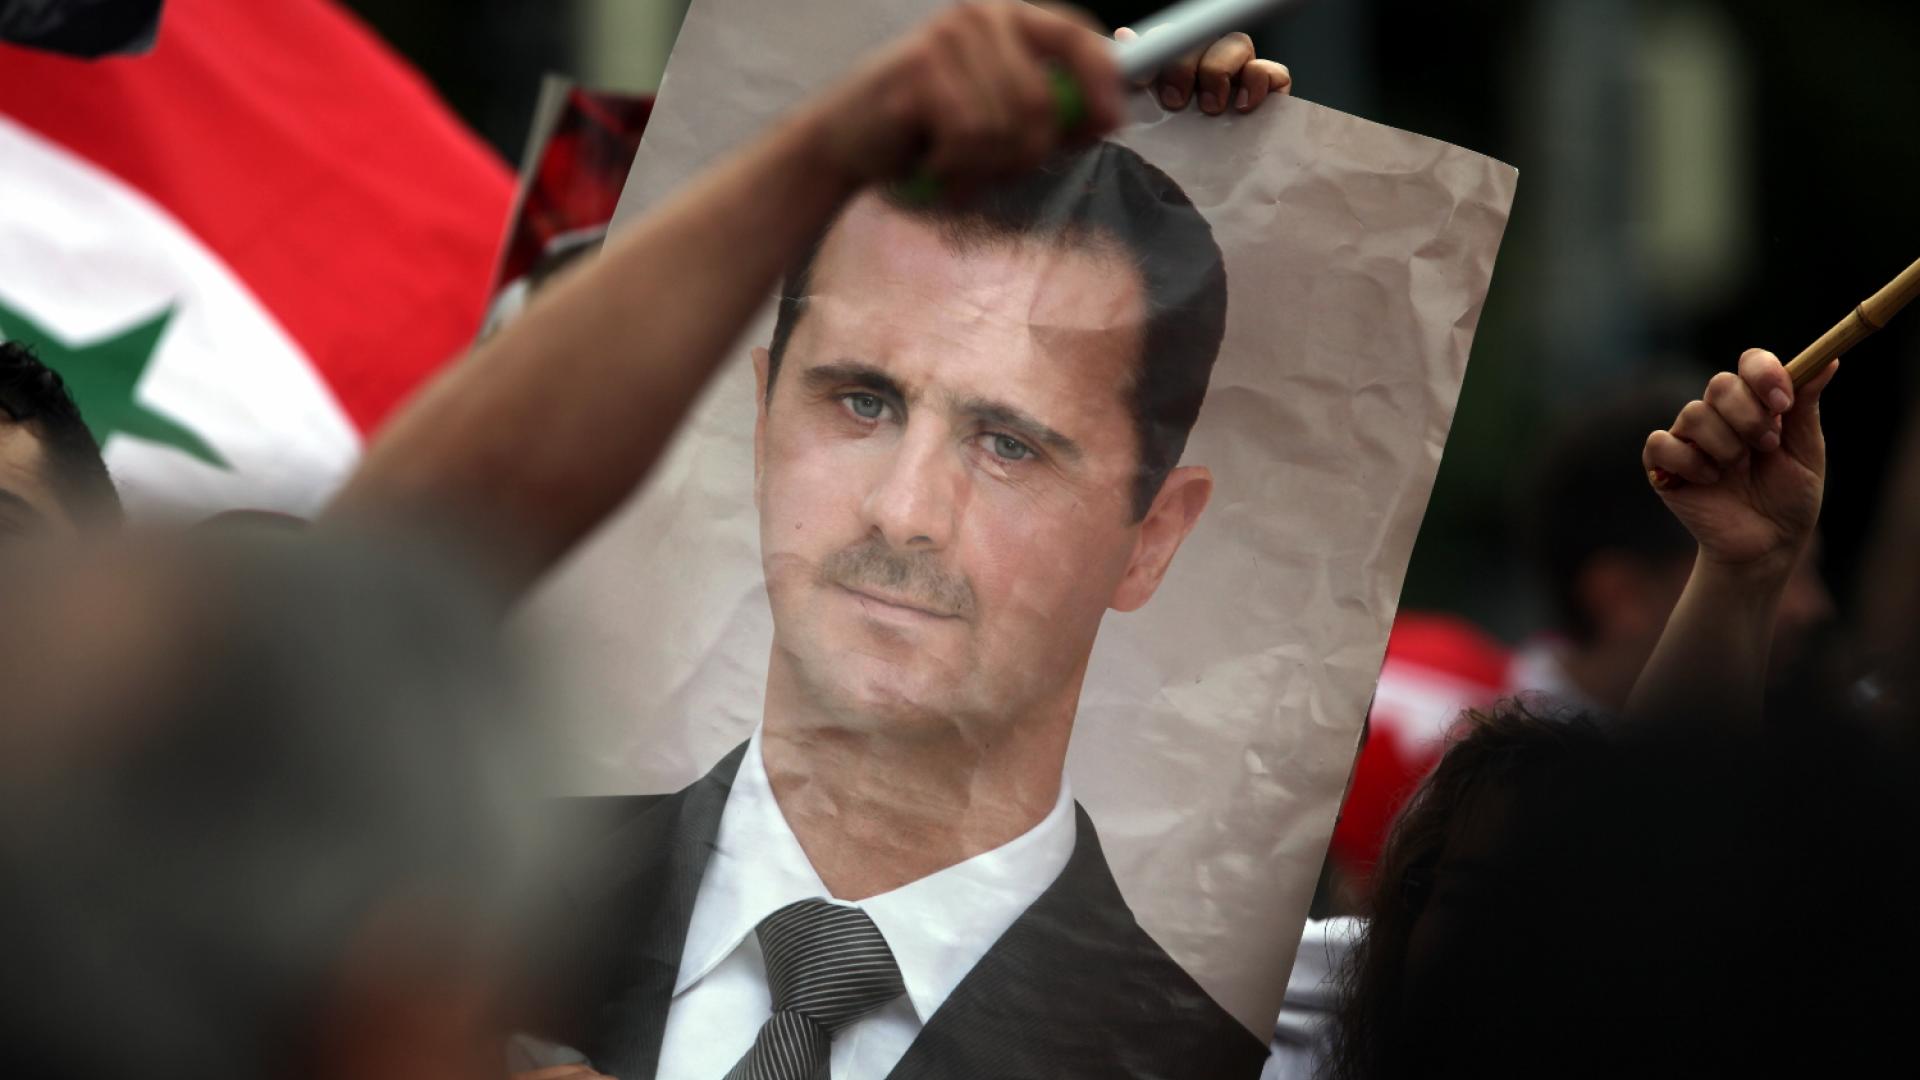 Bild von Baschar al-Assad auf einer Syrien-Demonstration (über dts Nachrichtenagentur)